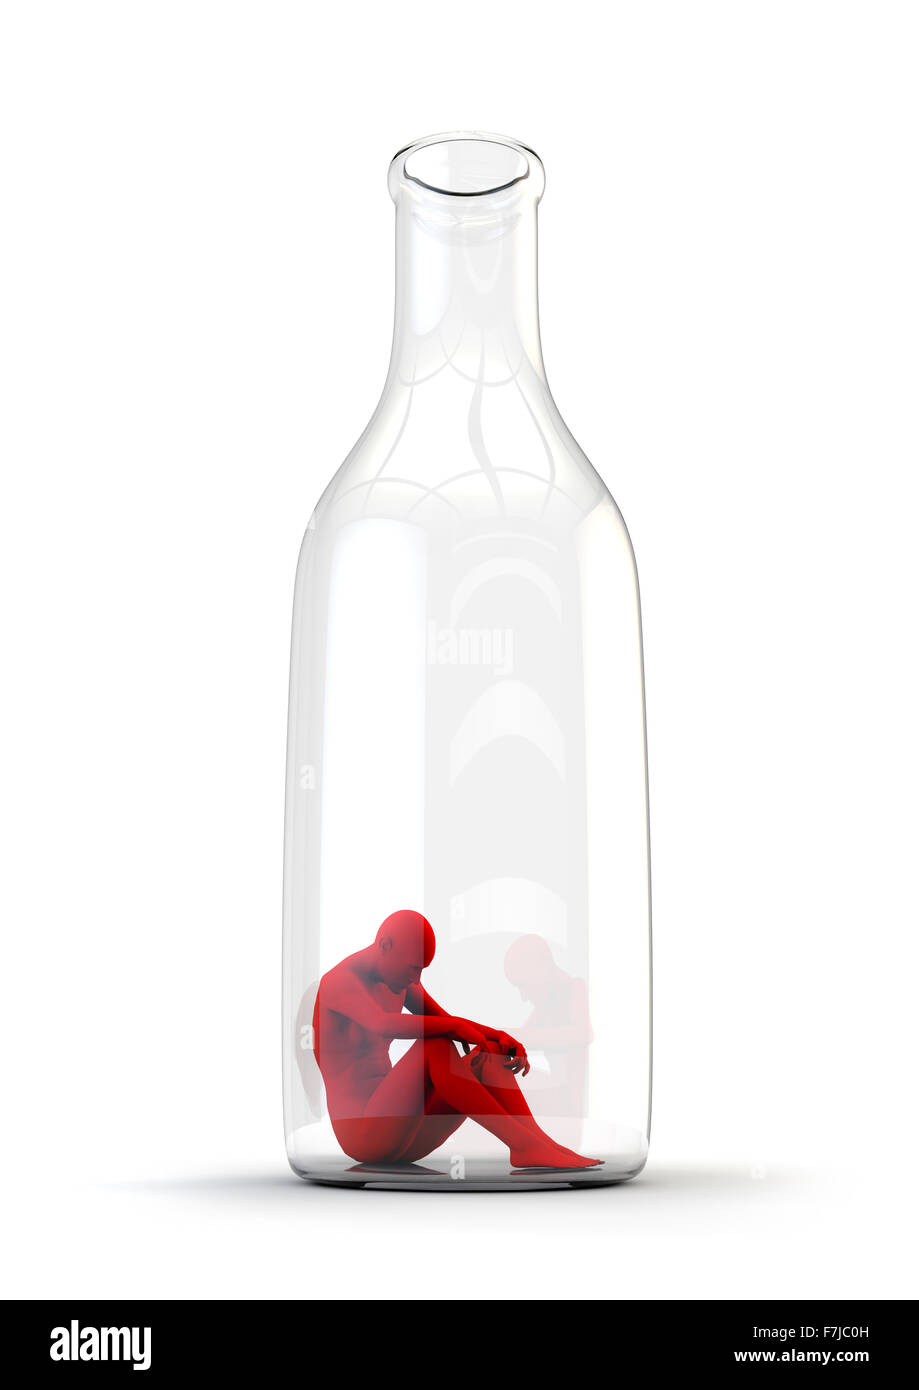 La vie dans la bouteille / Alcoolisme concept avec triste figure masculine assise au fond d'une bouteille Banque D'Images